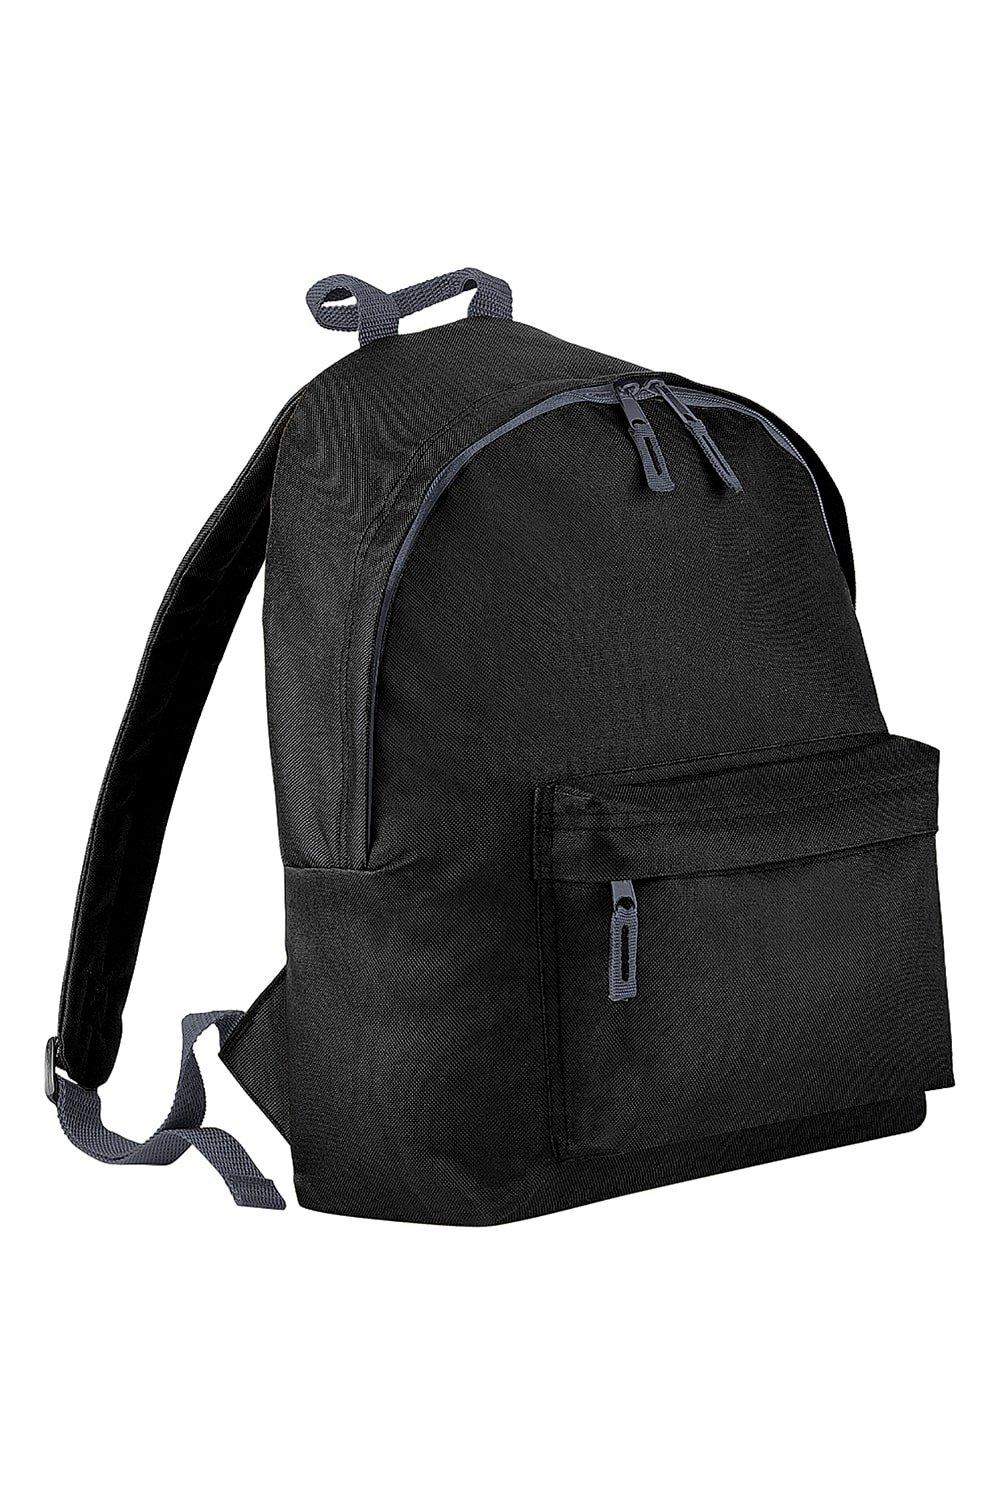 Модный рюкзак / рюкзак (14 литров) (2 шт. в упаковке) Bagbase, черный